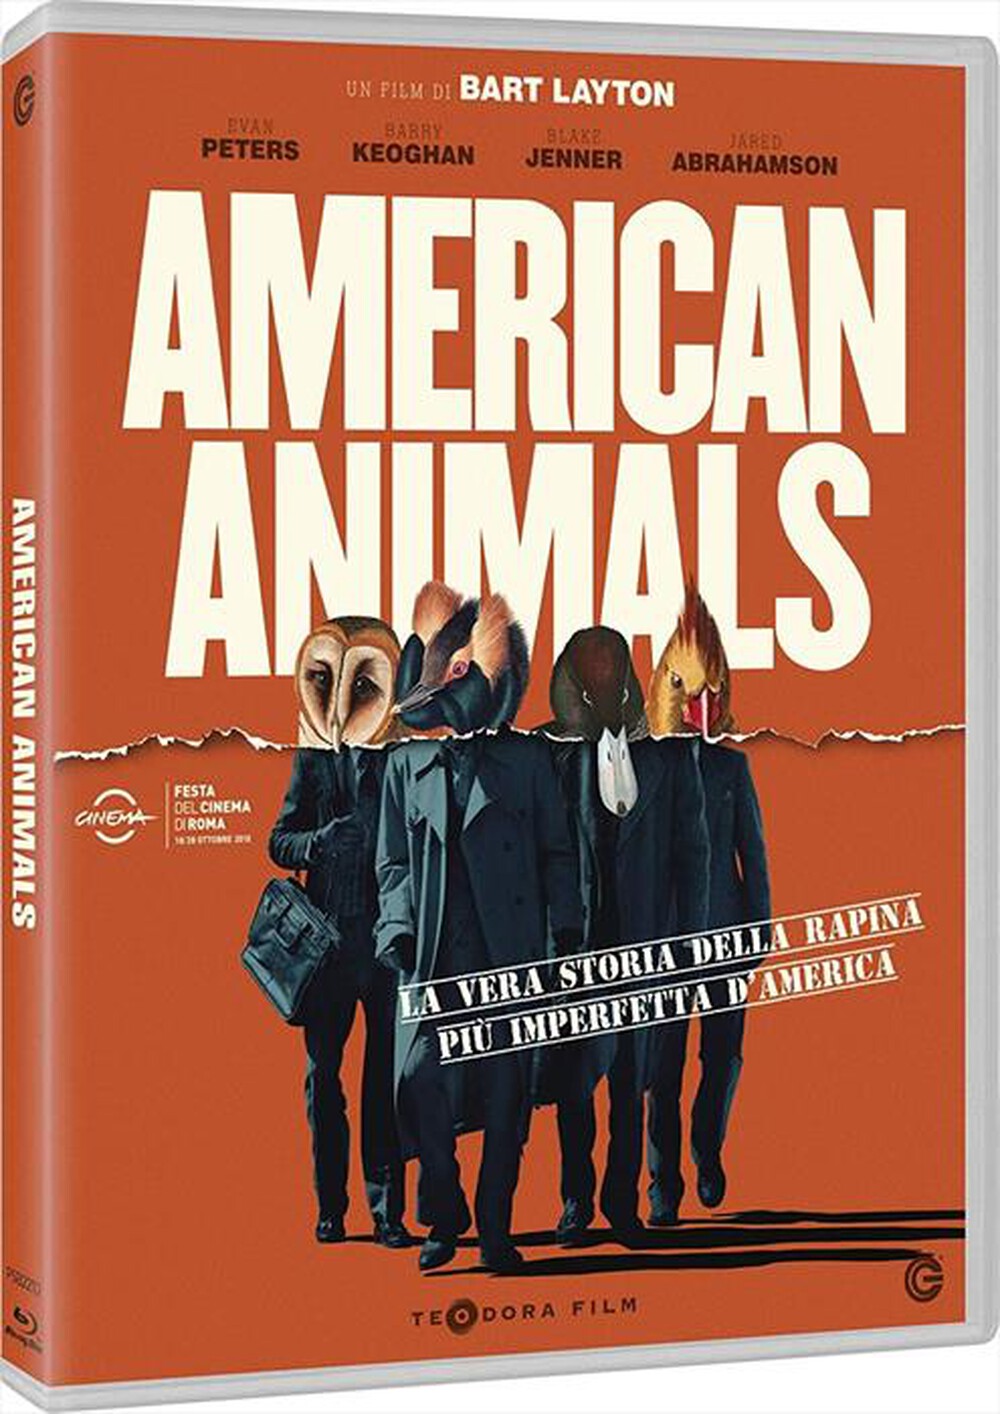 "TEODORA FILM - American Animals"